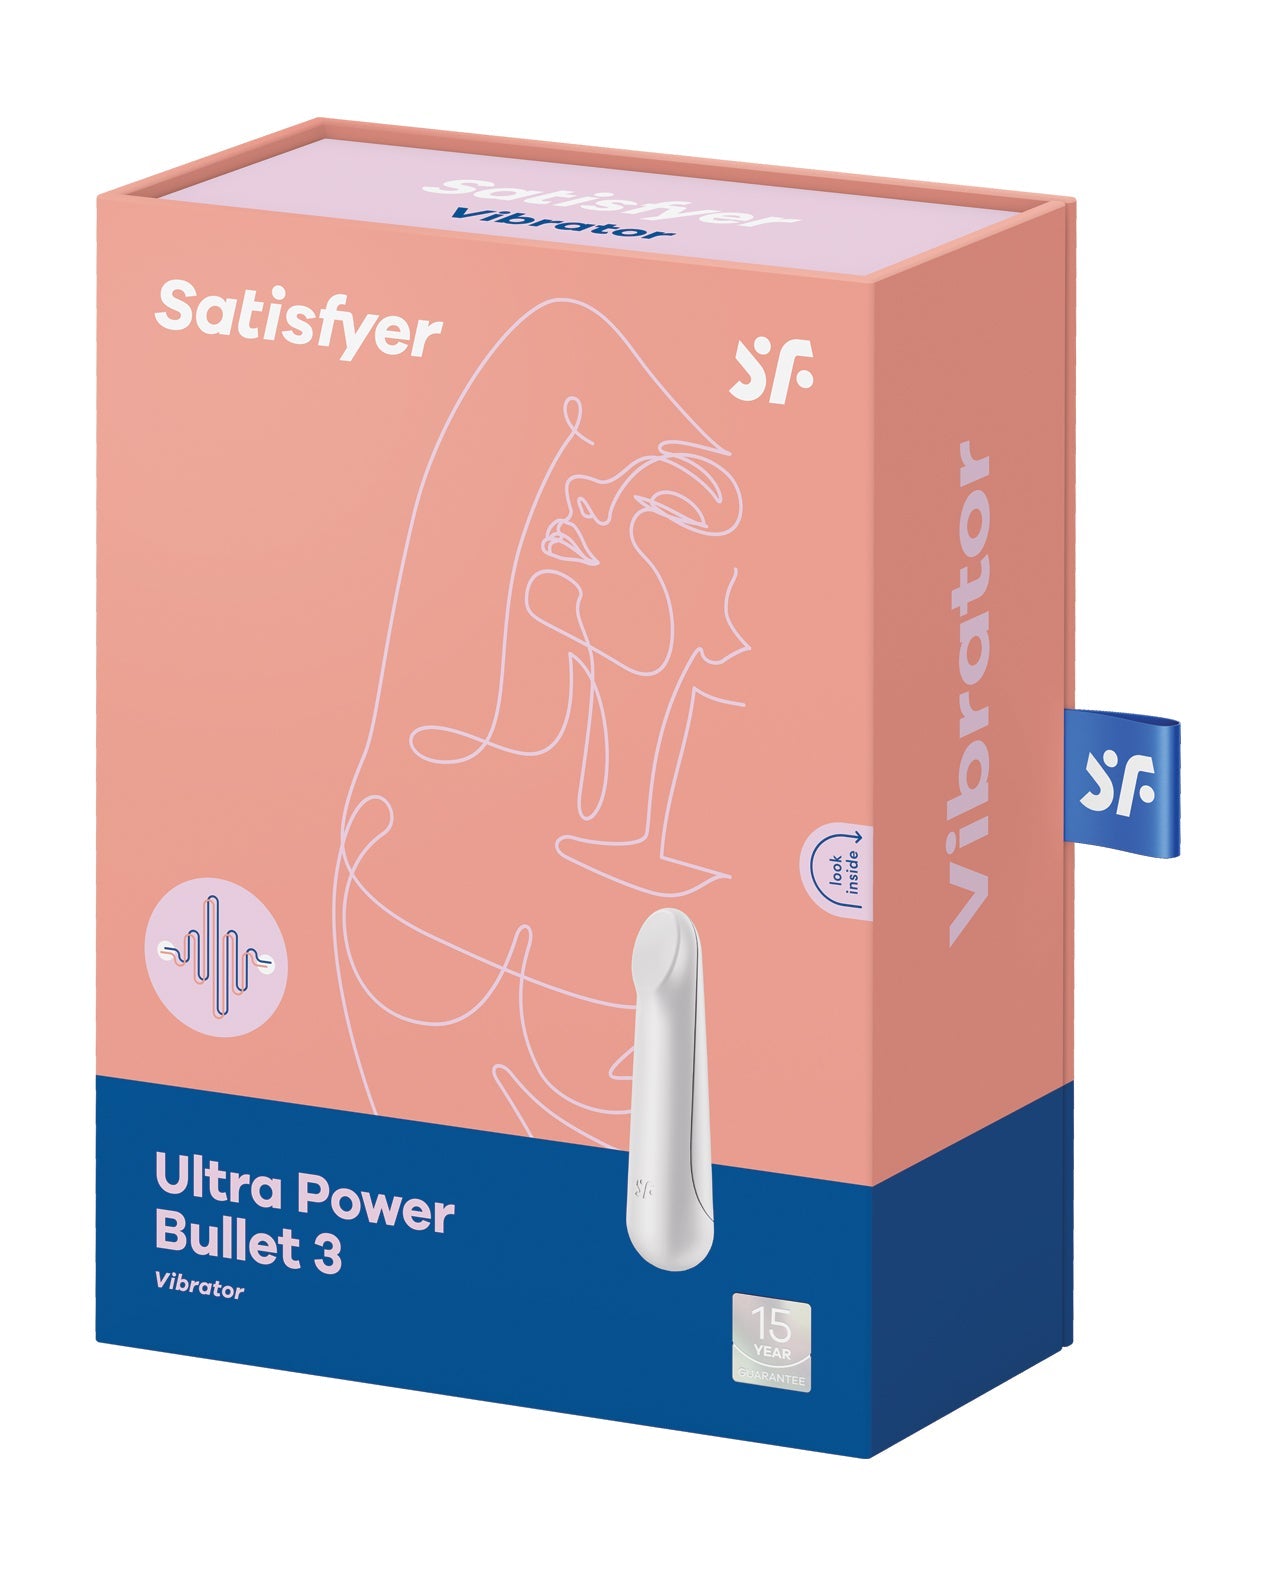 Satisfyer Ultra Power Bullet 3 - White